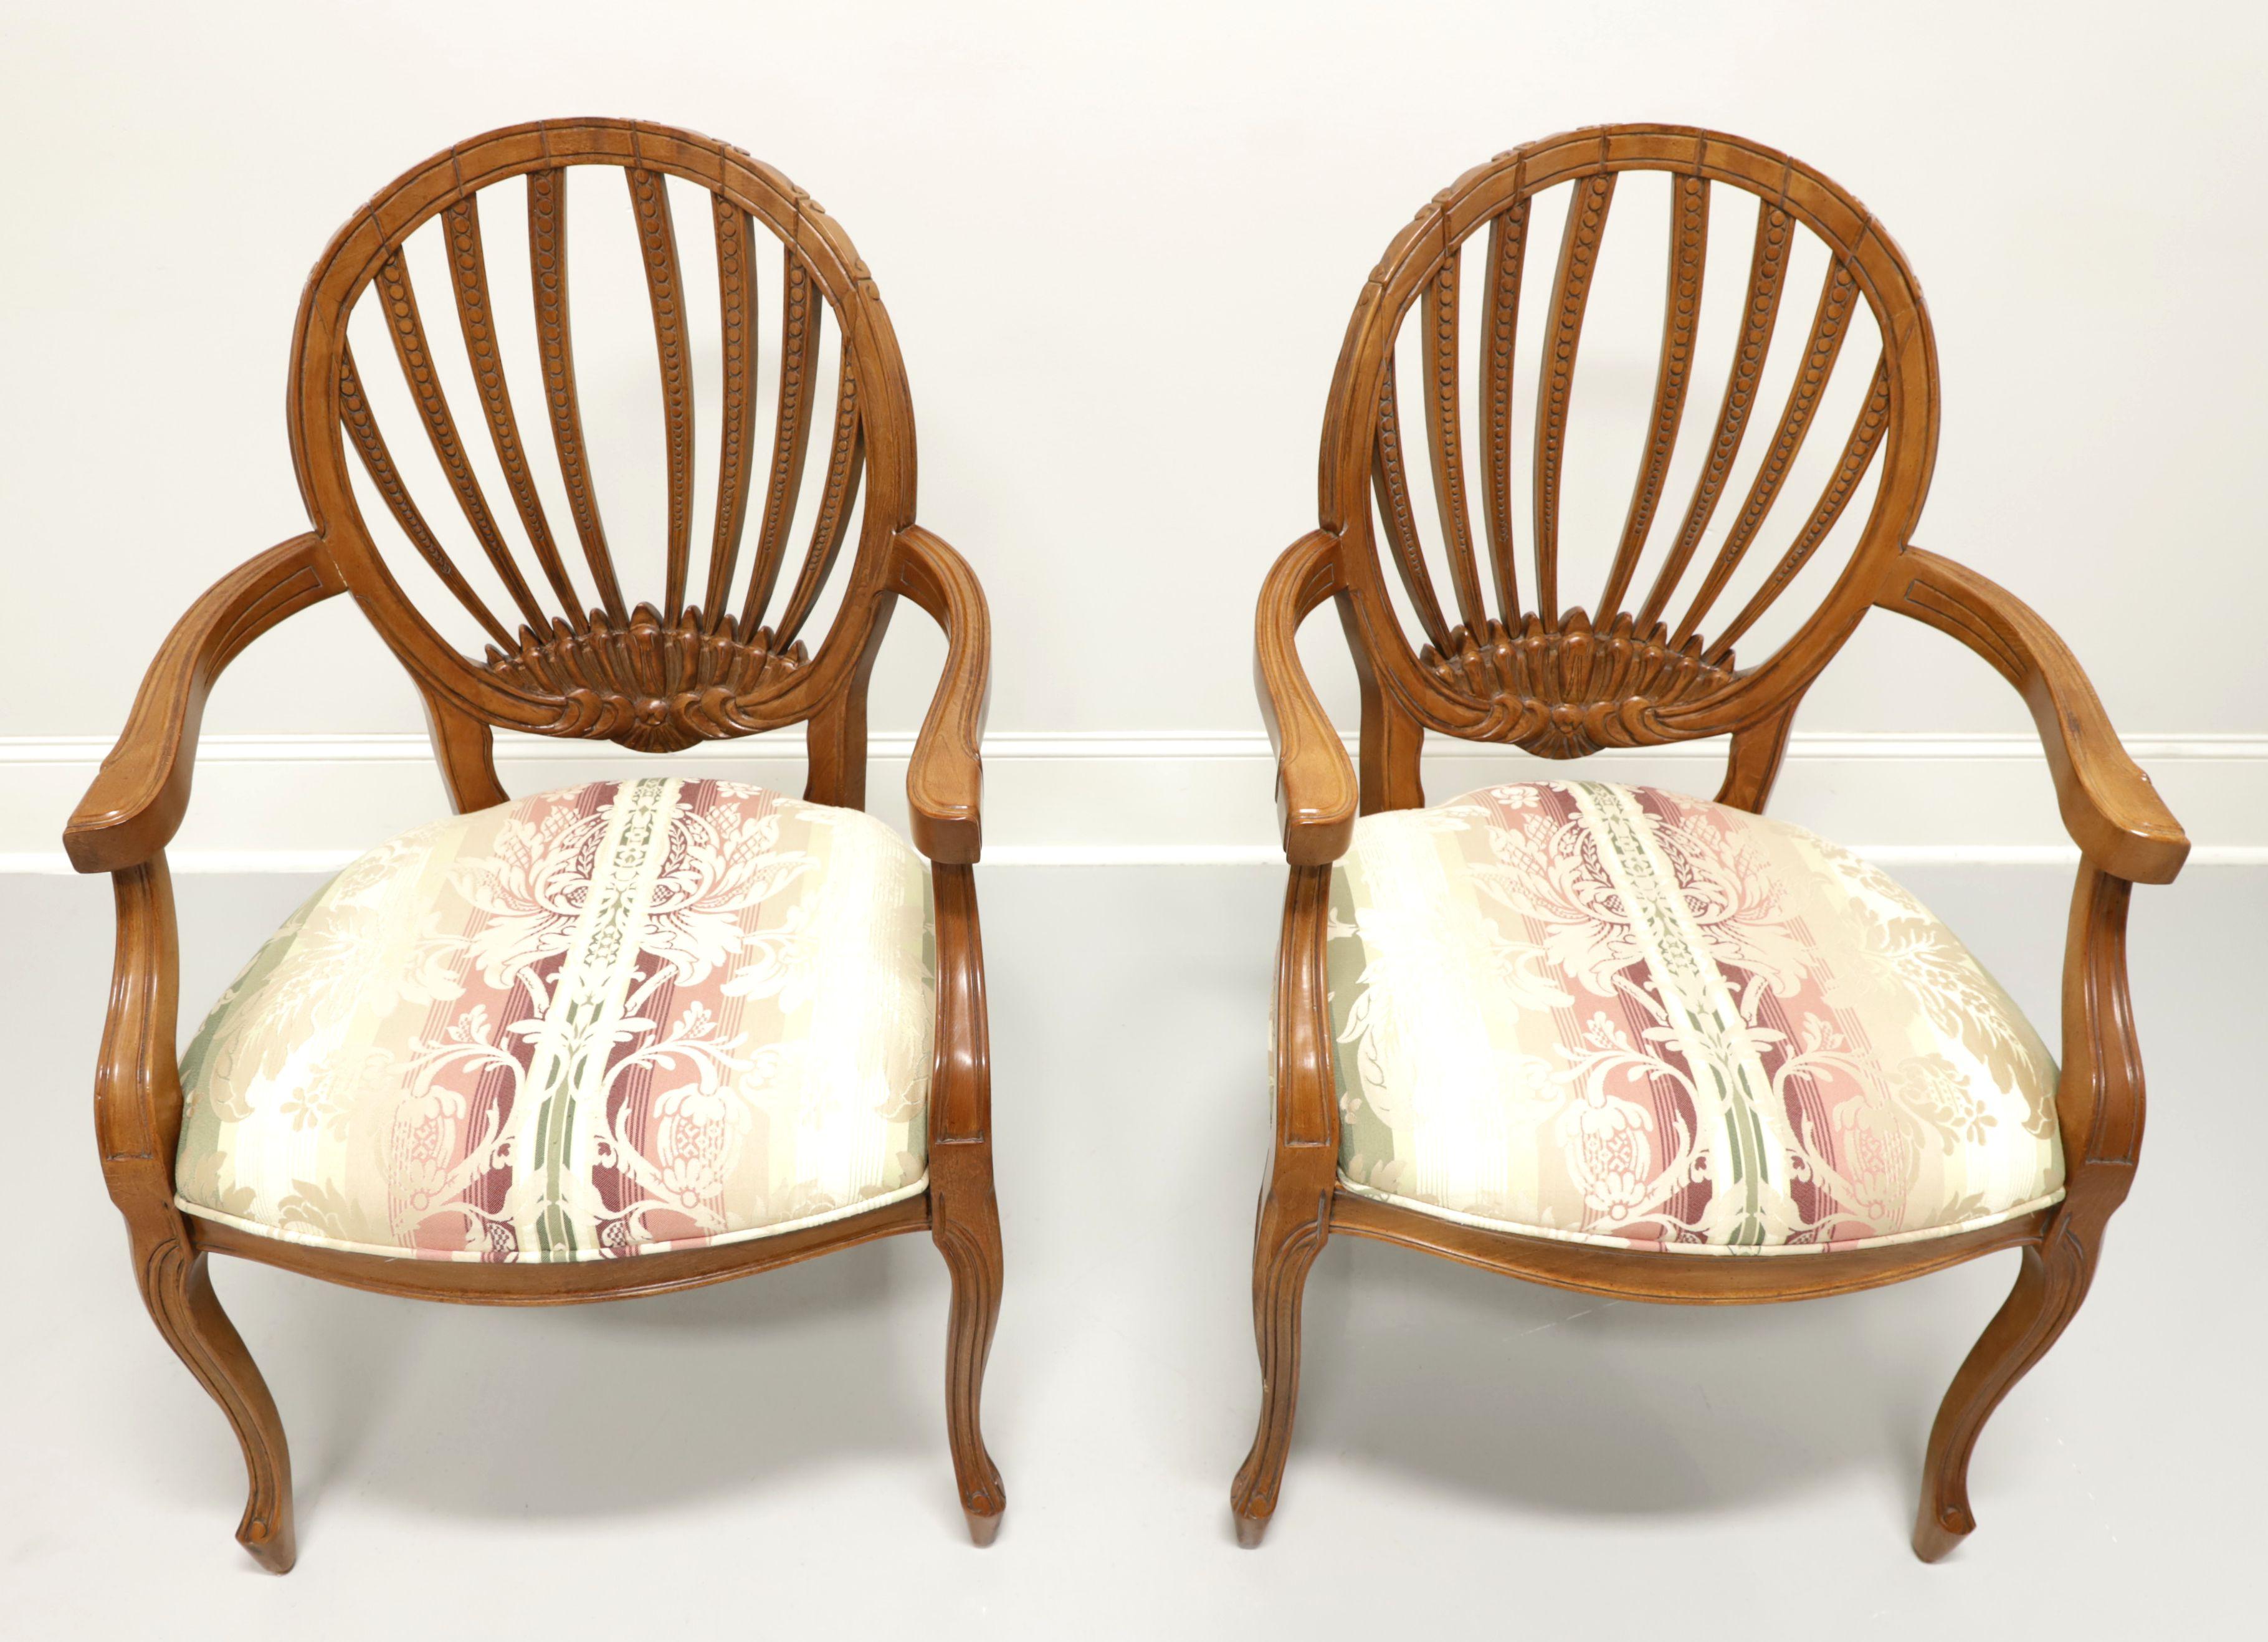 Une paire de fauteuils de salle à manger de style French Country par Century Furniture, de Hickory, Caroline du Nord, USA. Bois dur avec finition noyer, dossier ovale à motif sculpté ouvert, accoudoirs incurvés sculptés, sièges rembourrés en tissu à